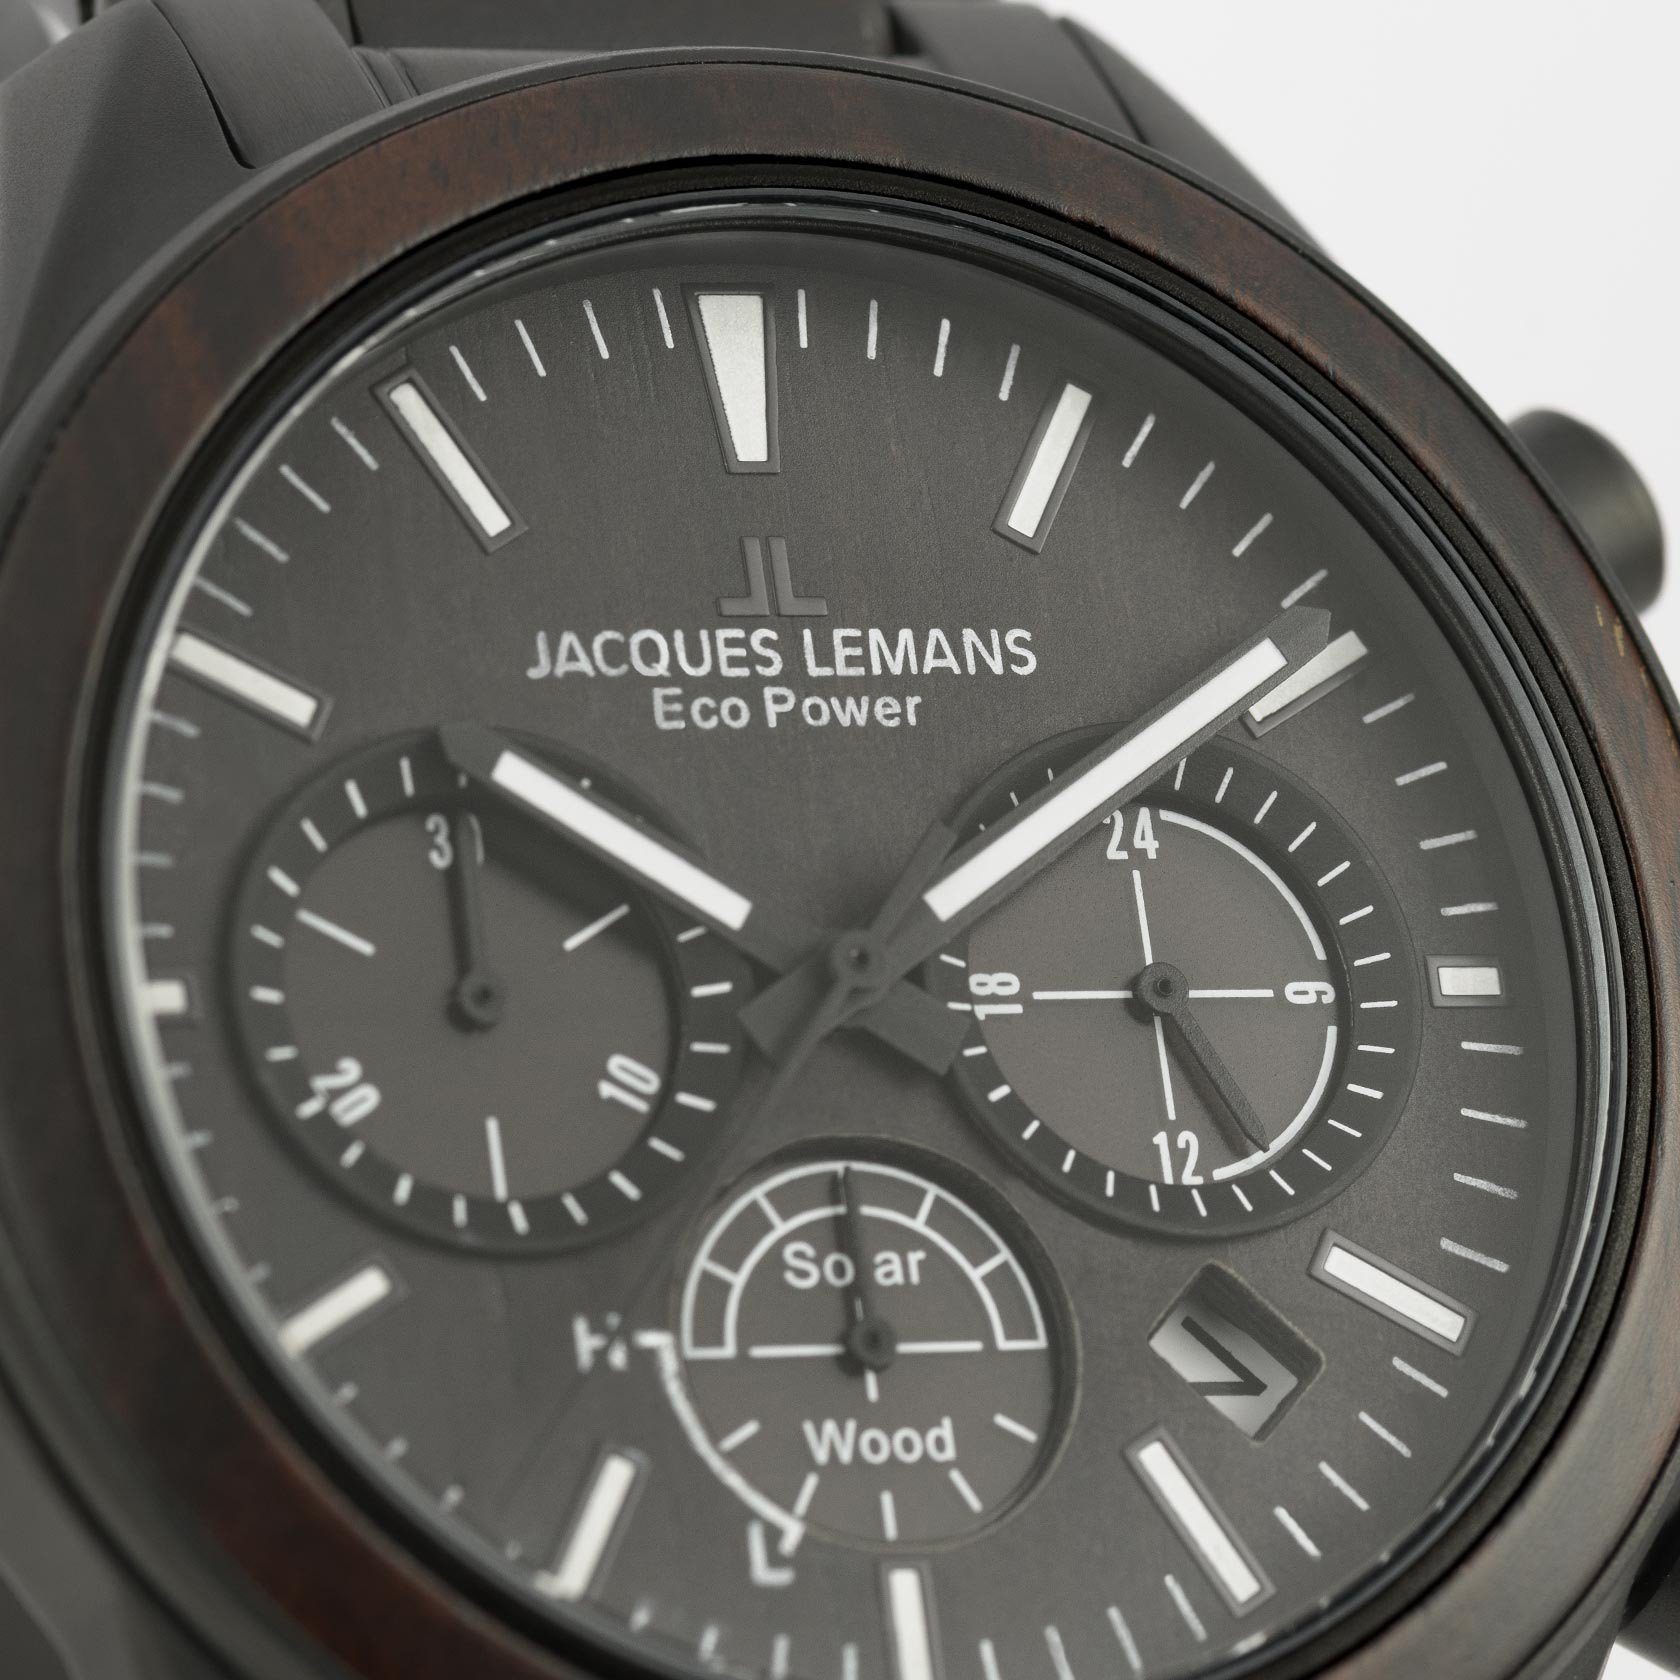 Jacques Lemans Chronograph Eco Power schwarz 1-2115M Wood, Solar